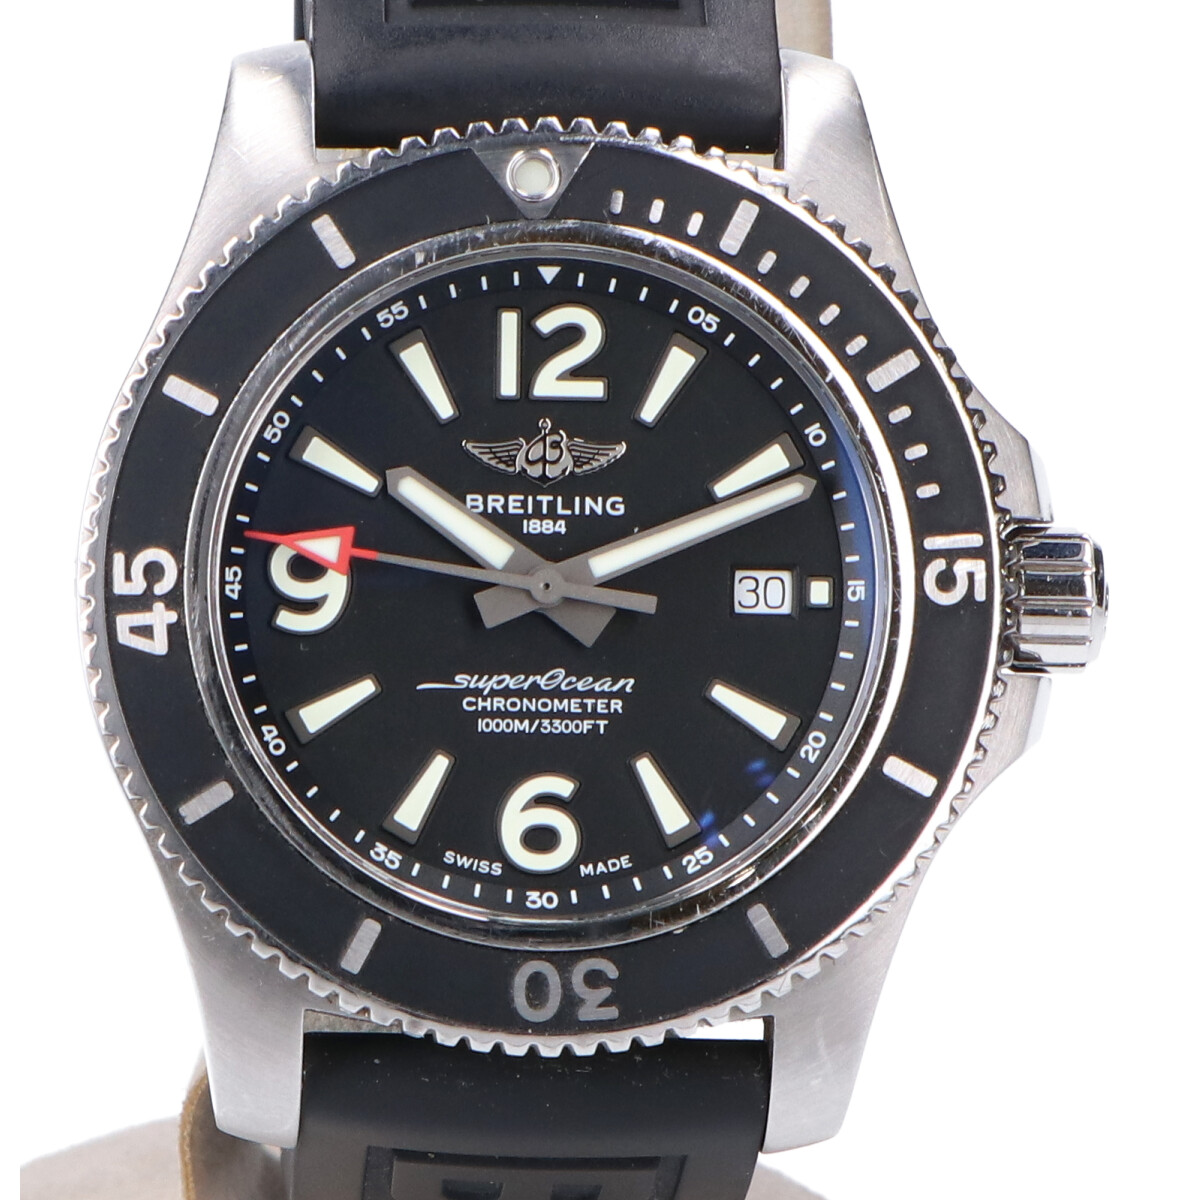 ブライトリングのA17367 スーパーオーシャンオートマチック44 黒文字盤 自動巻き時計の買取実績です。